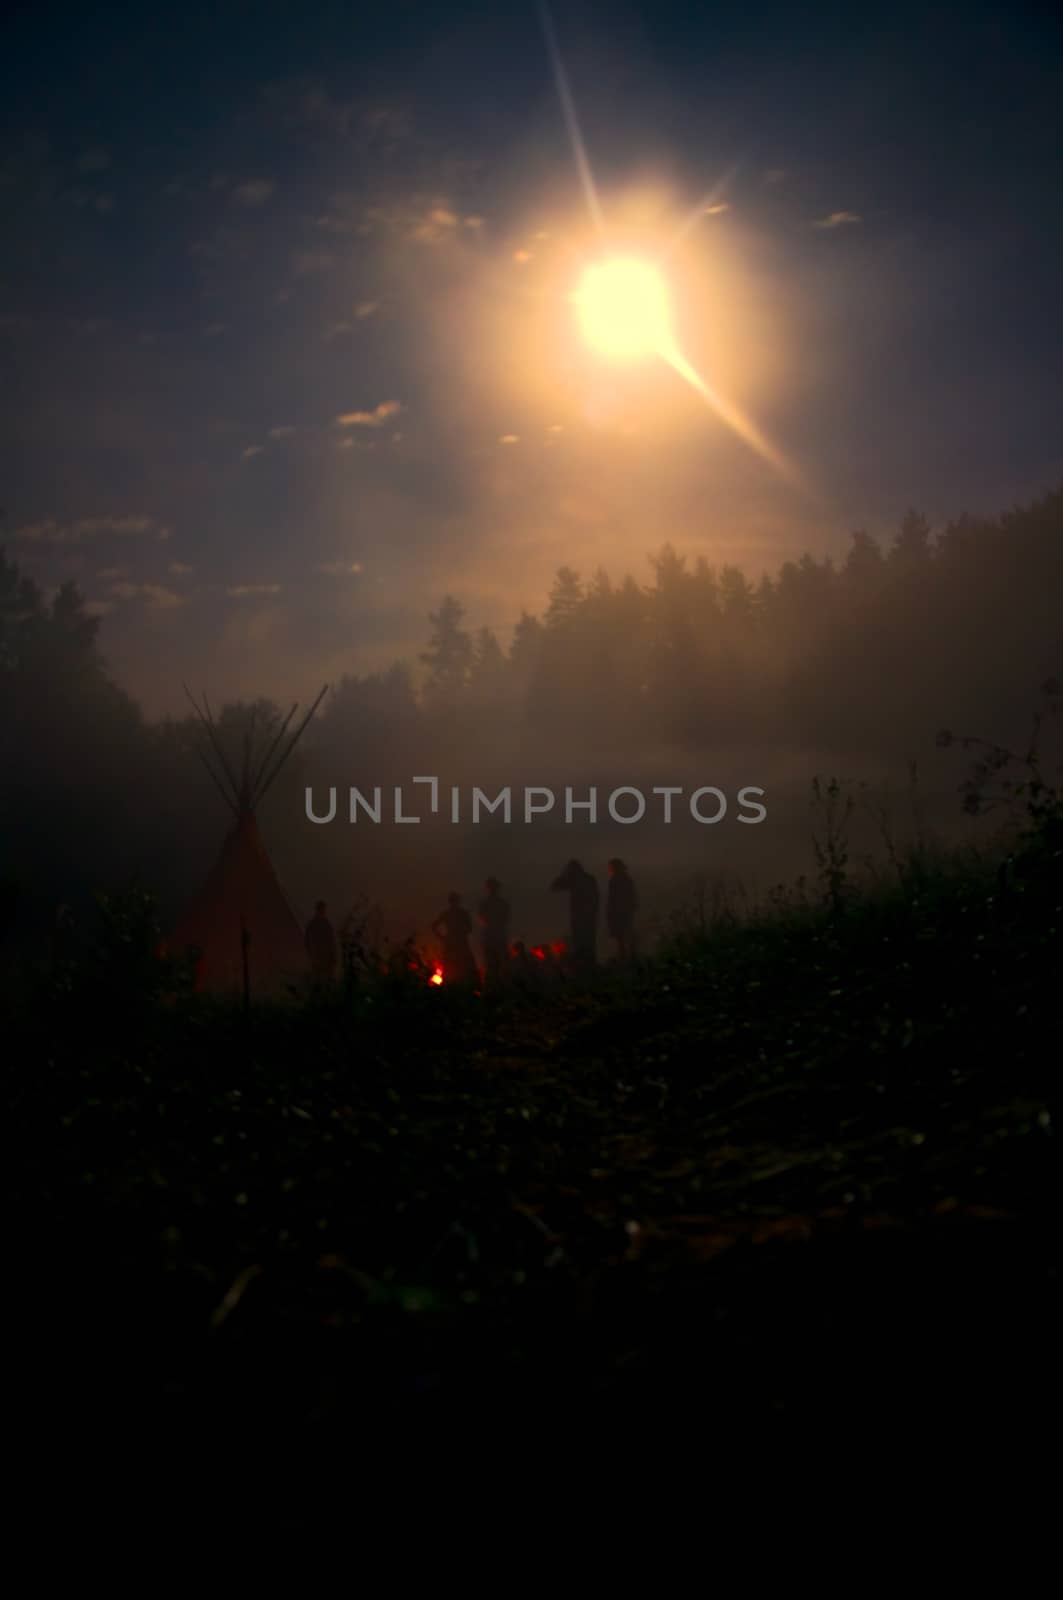 Night at campfire by MichalKnitl